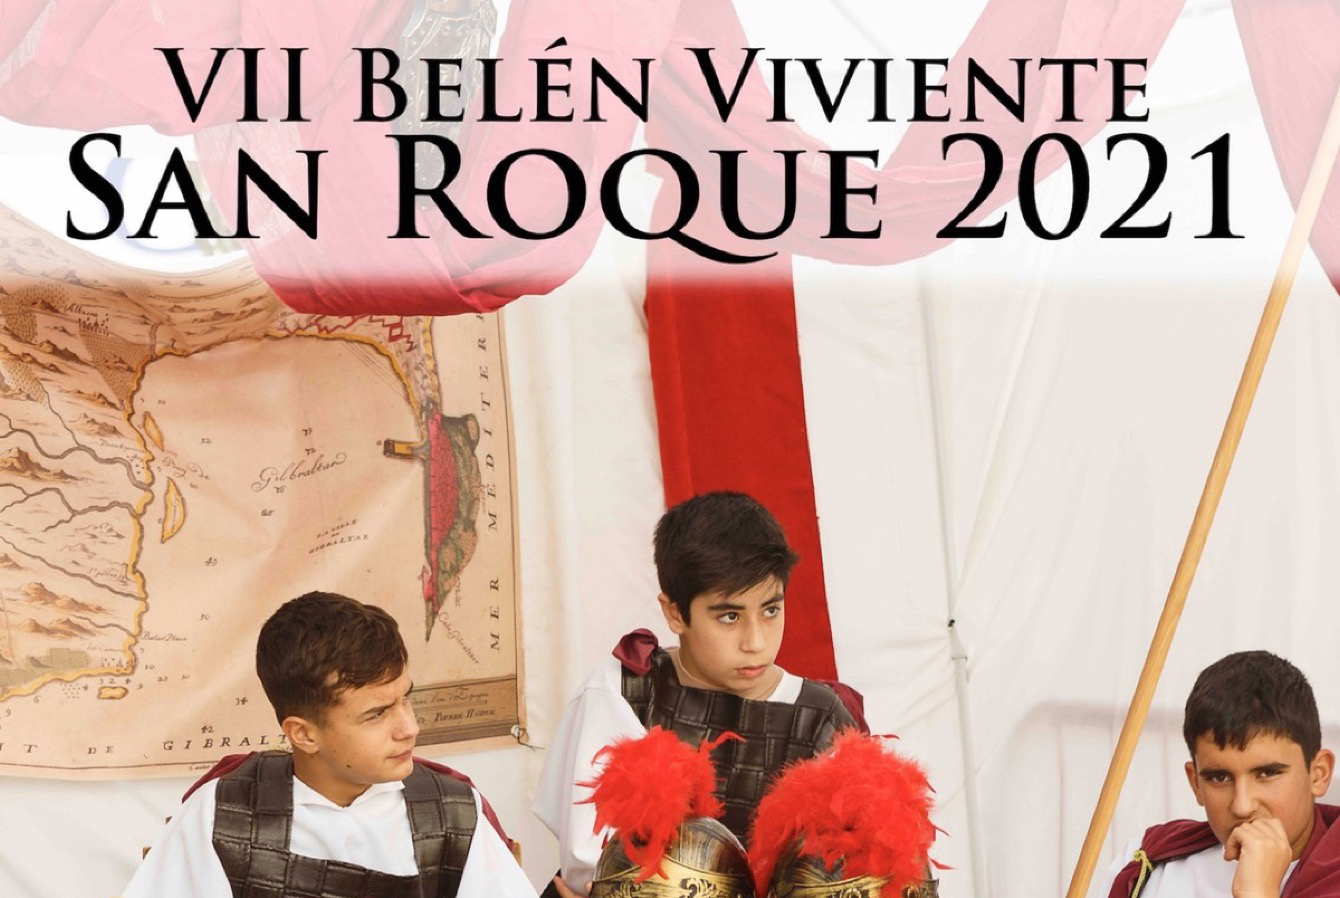 Este fin de semana en el Casco Histórico, VII Belén Viviente San Roque